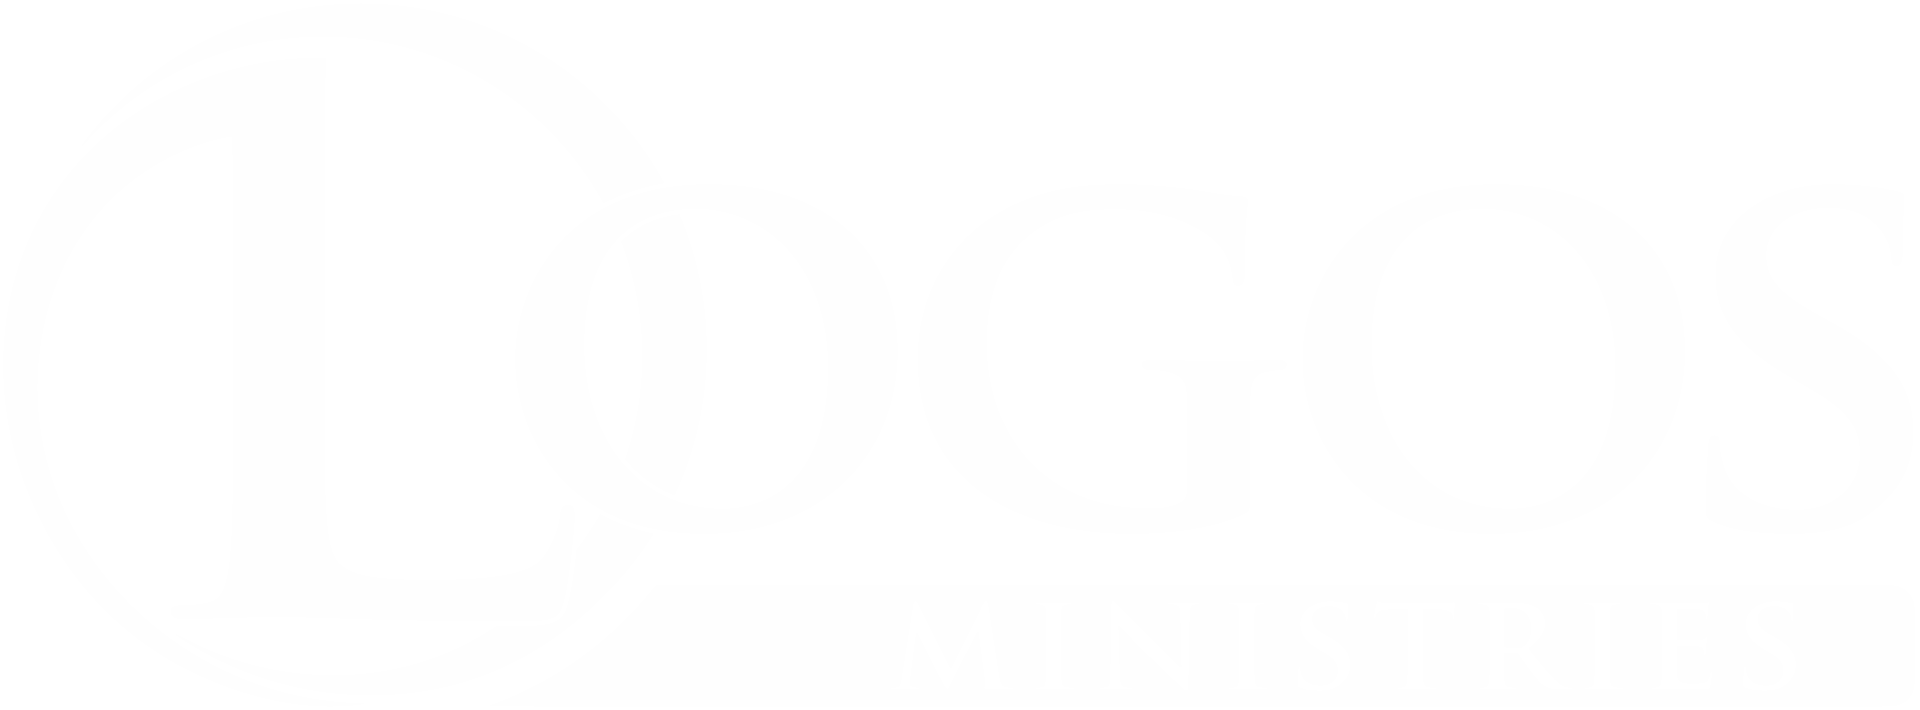 O Logos Ministries